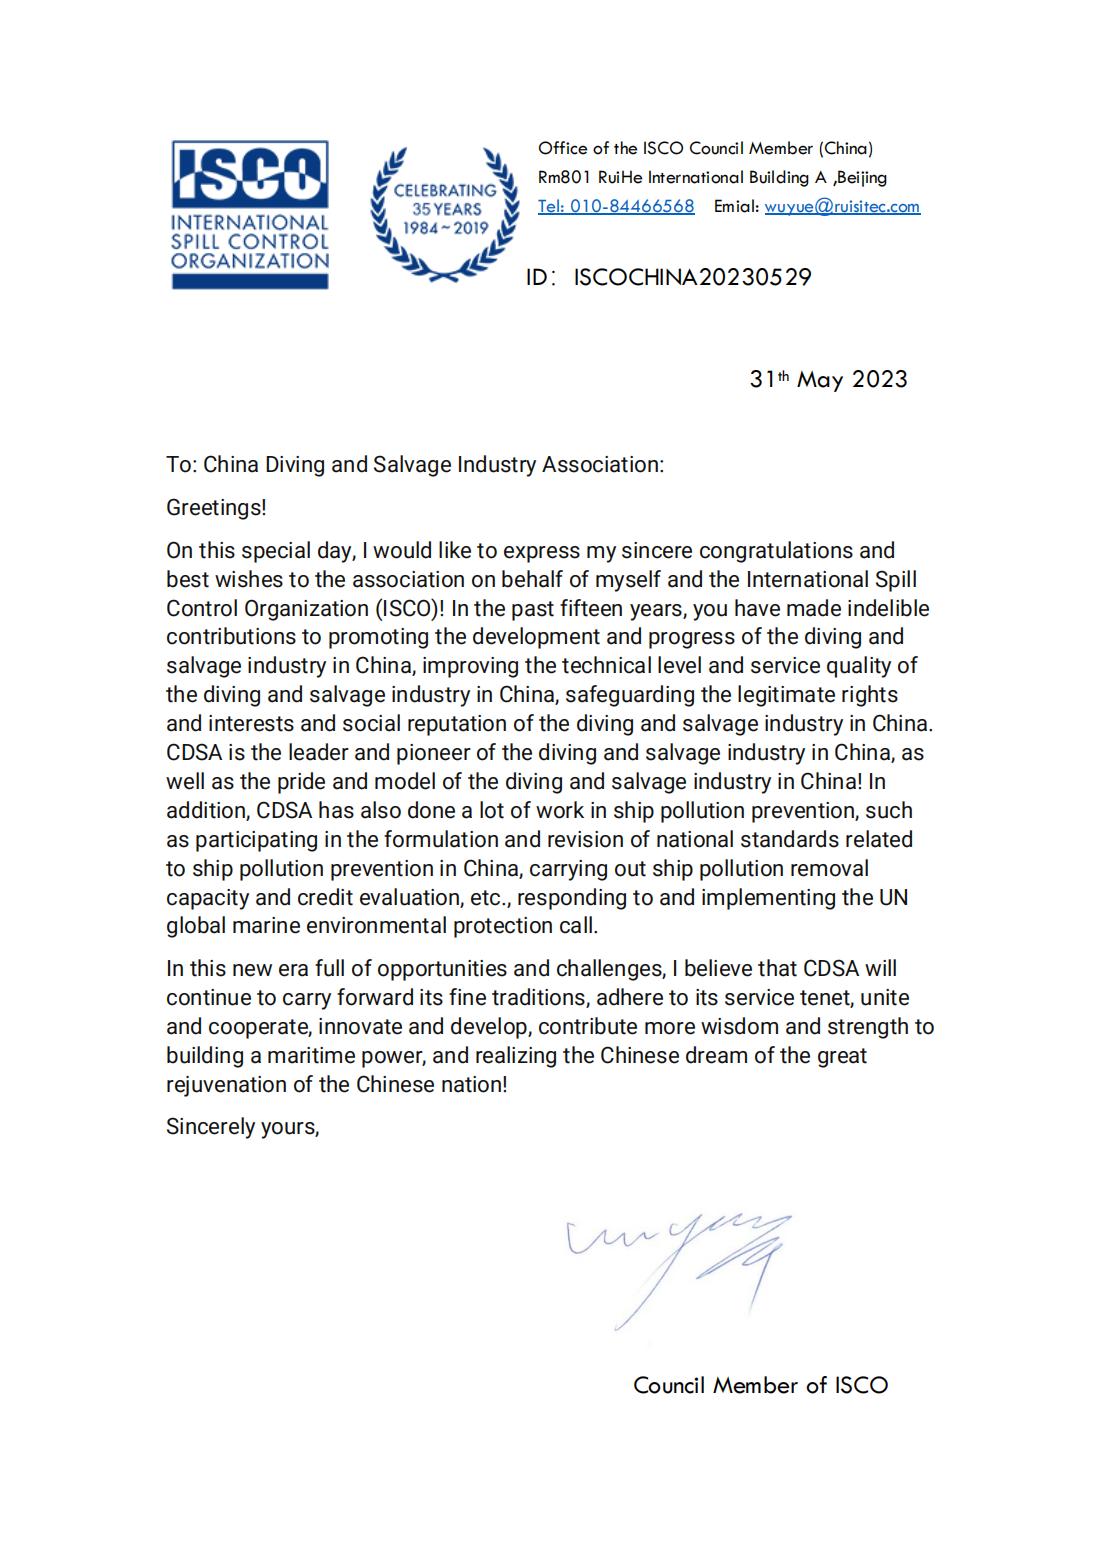 20230531 国际清污组织ISCO来信祝贺协会成立十五周年 Congrats Letter for CDSA 2023_01.jpg